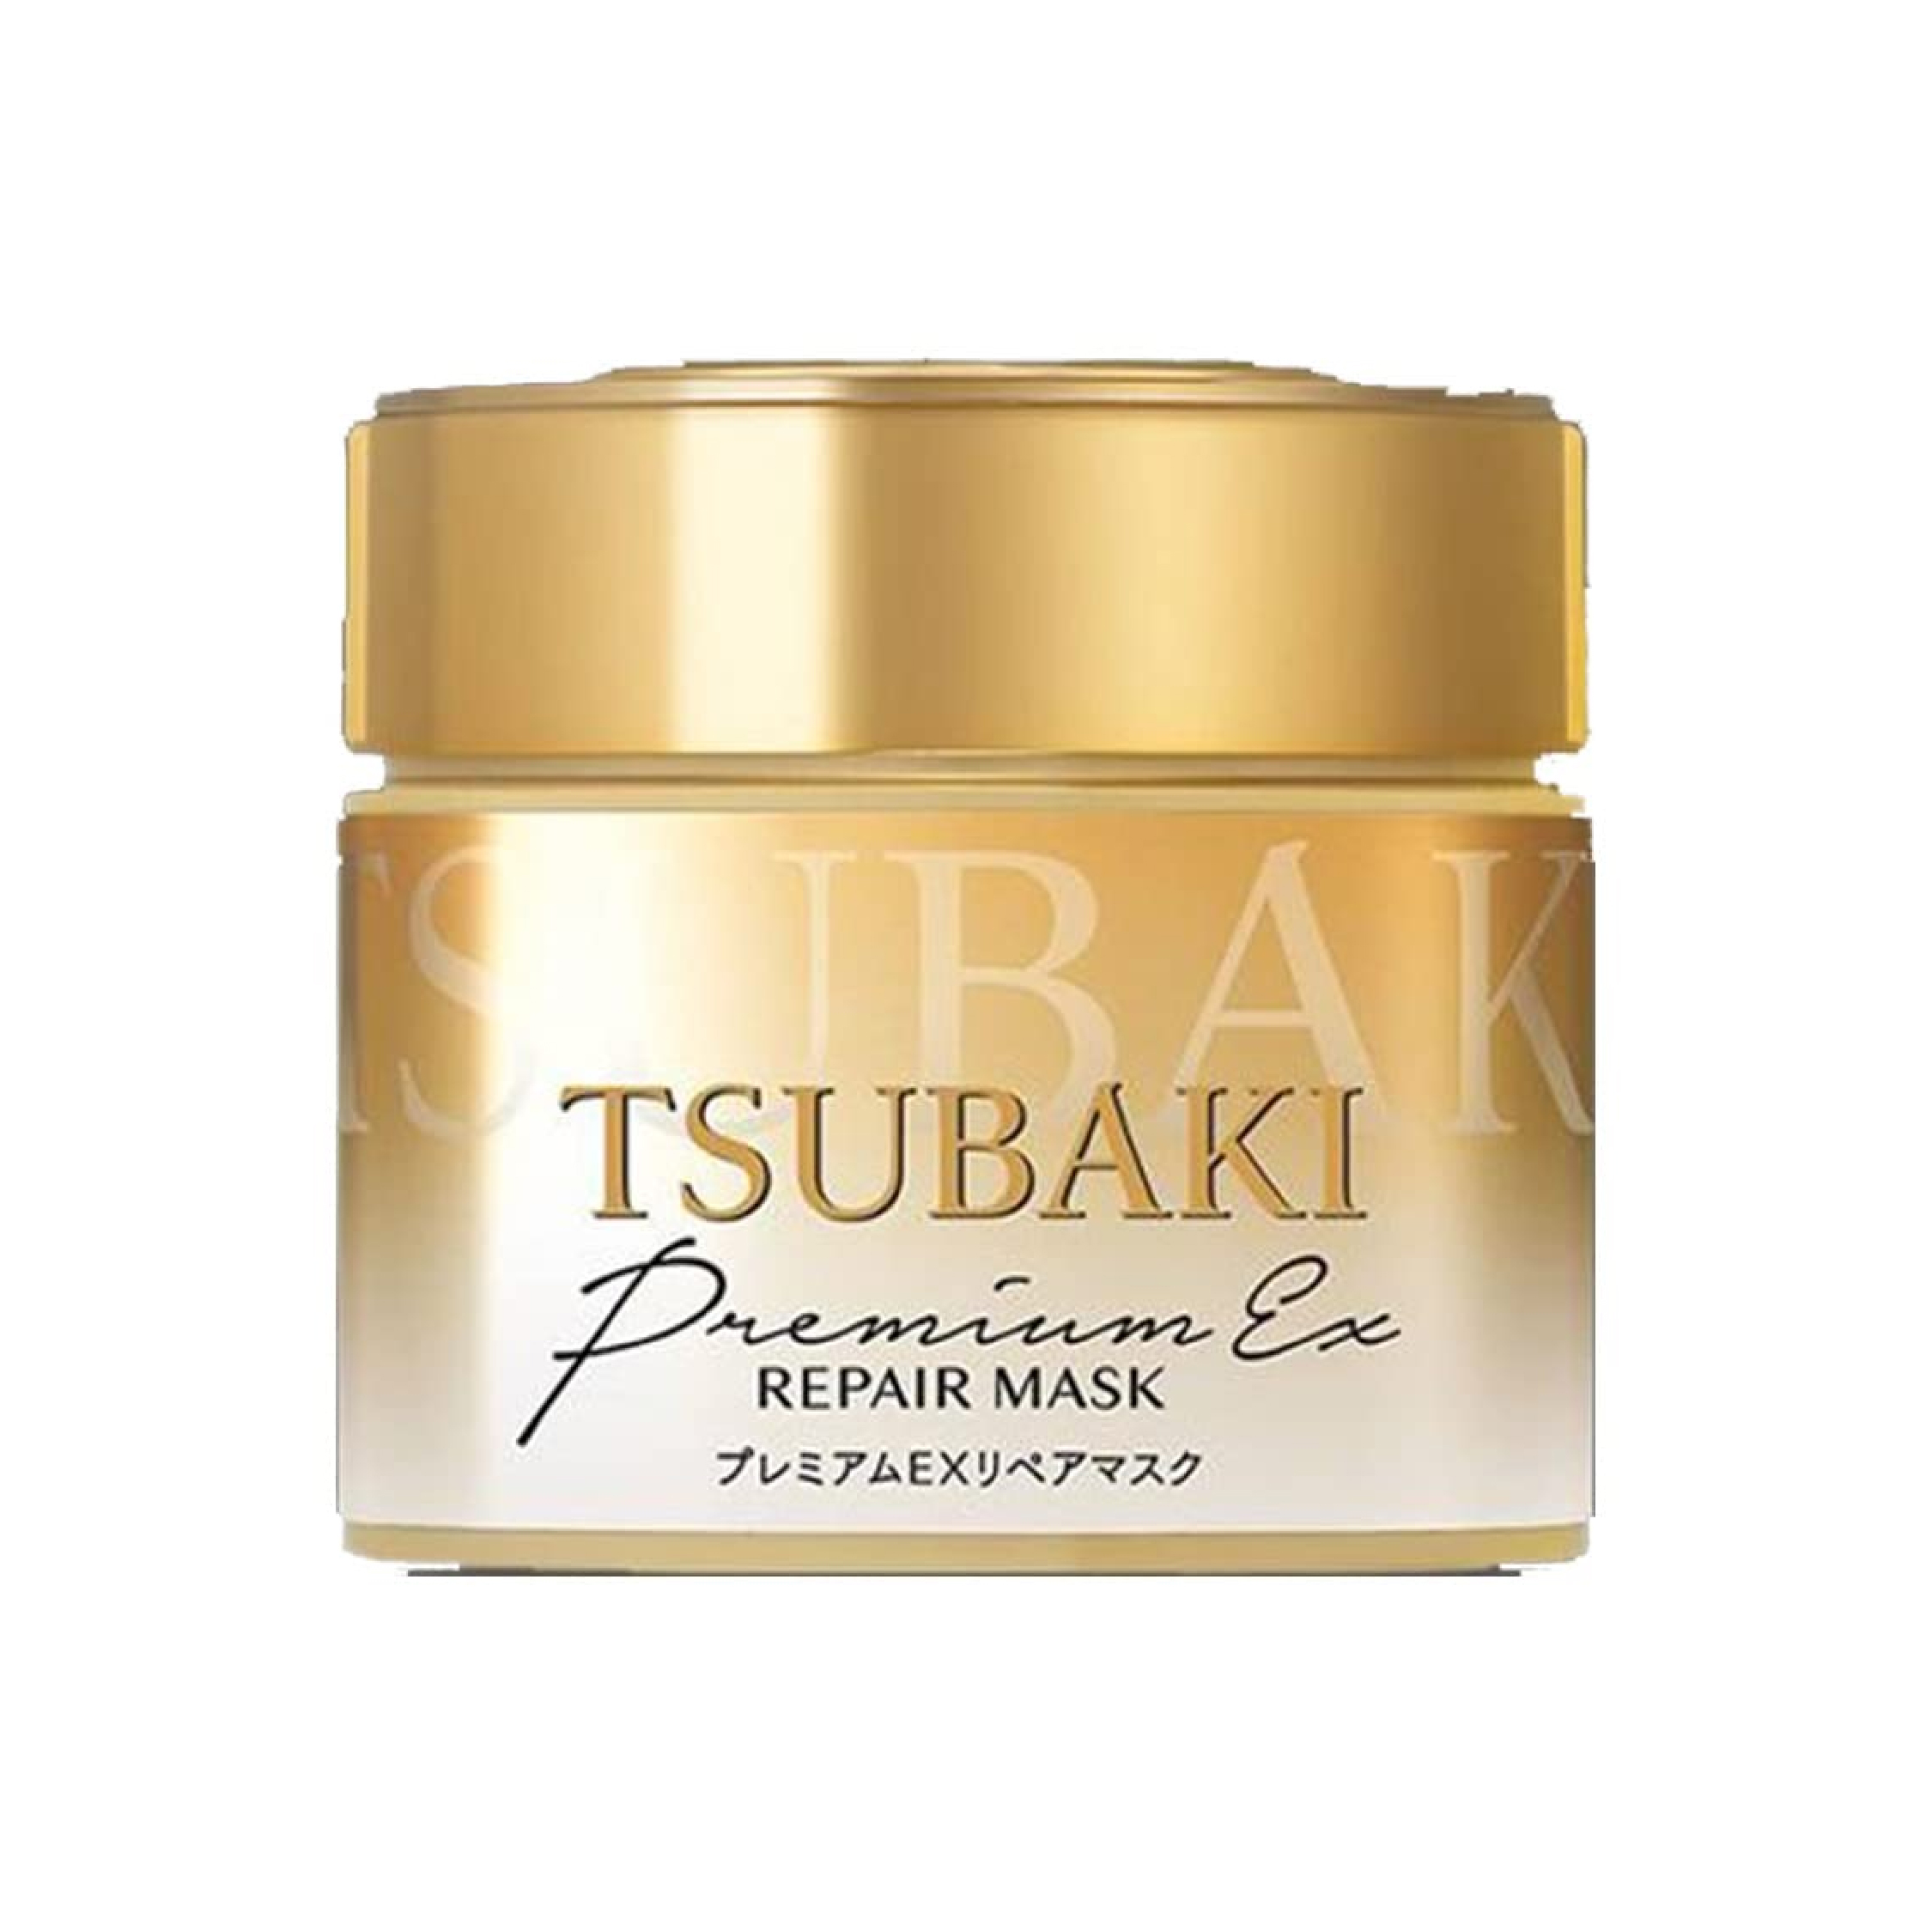 TSUBAKI Premium Repair Mask - 180G